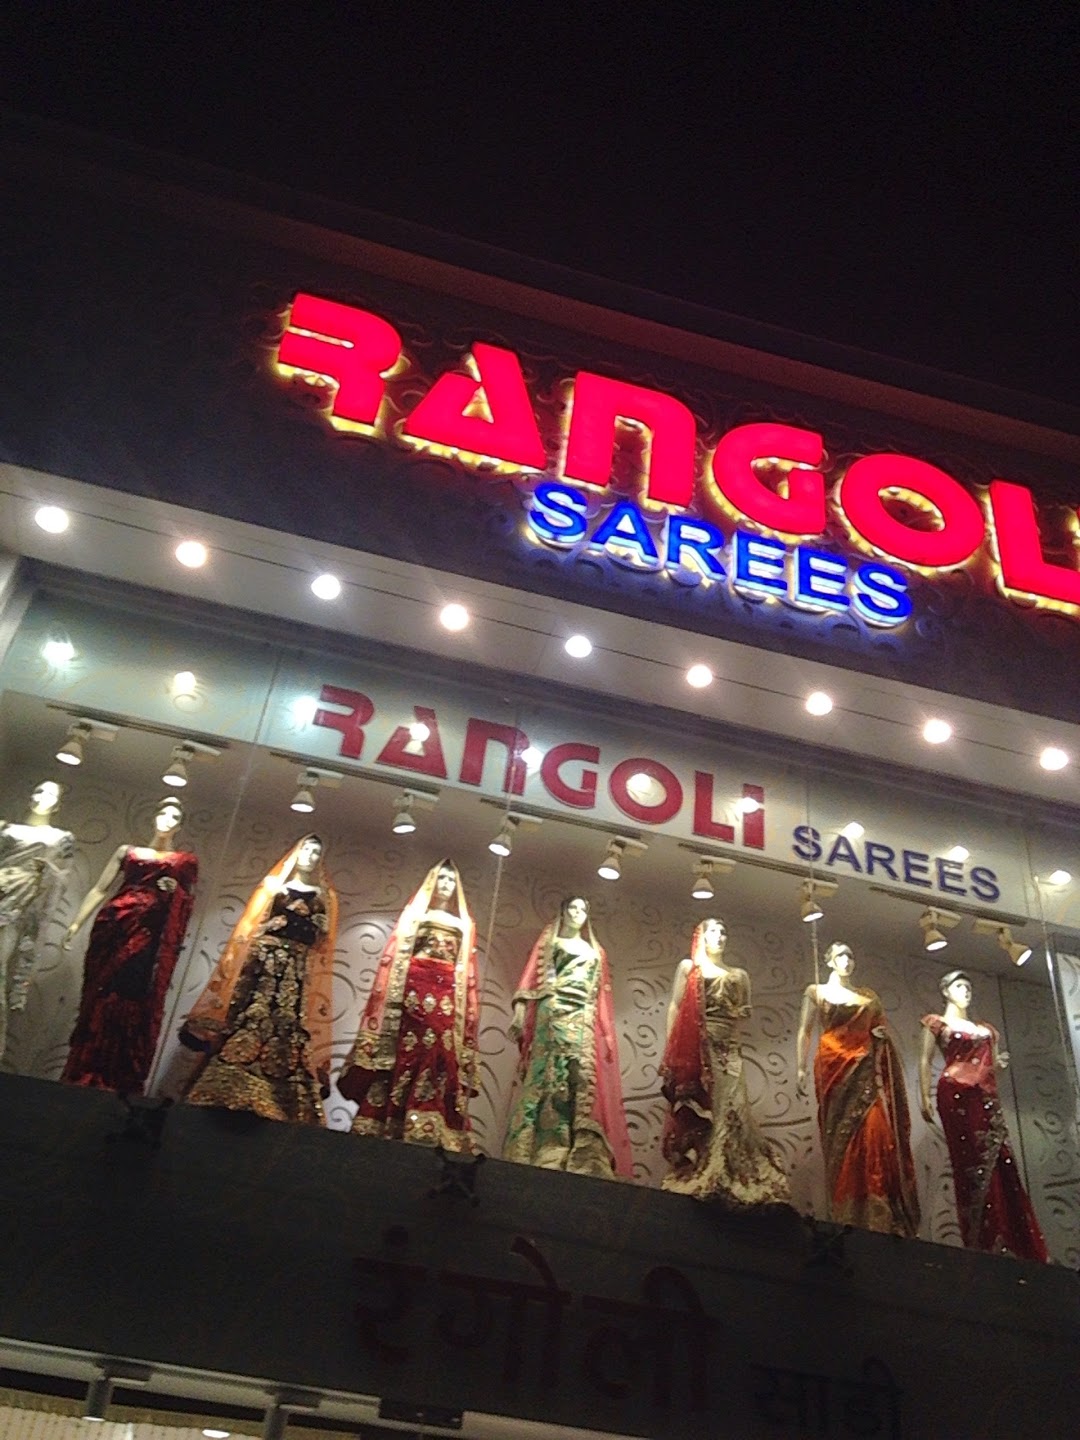 Rangoli Sarees